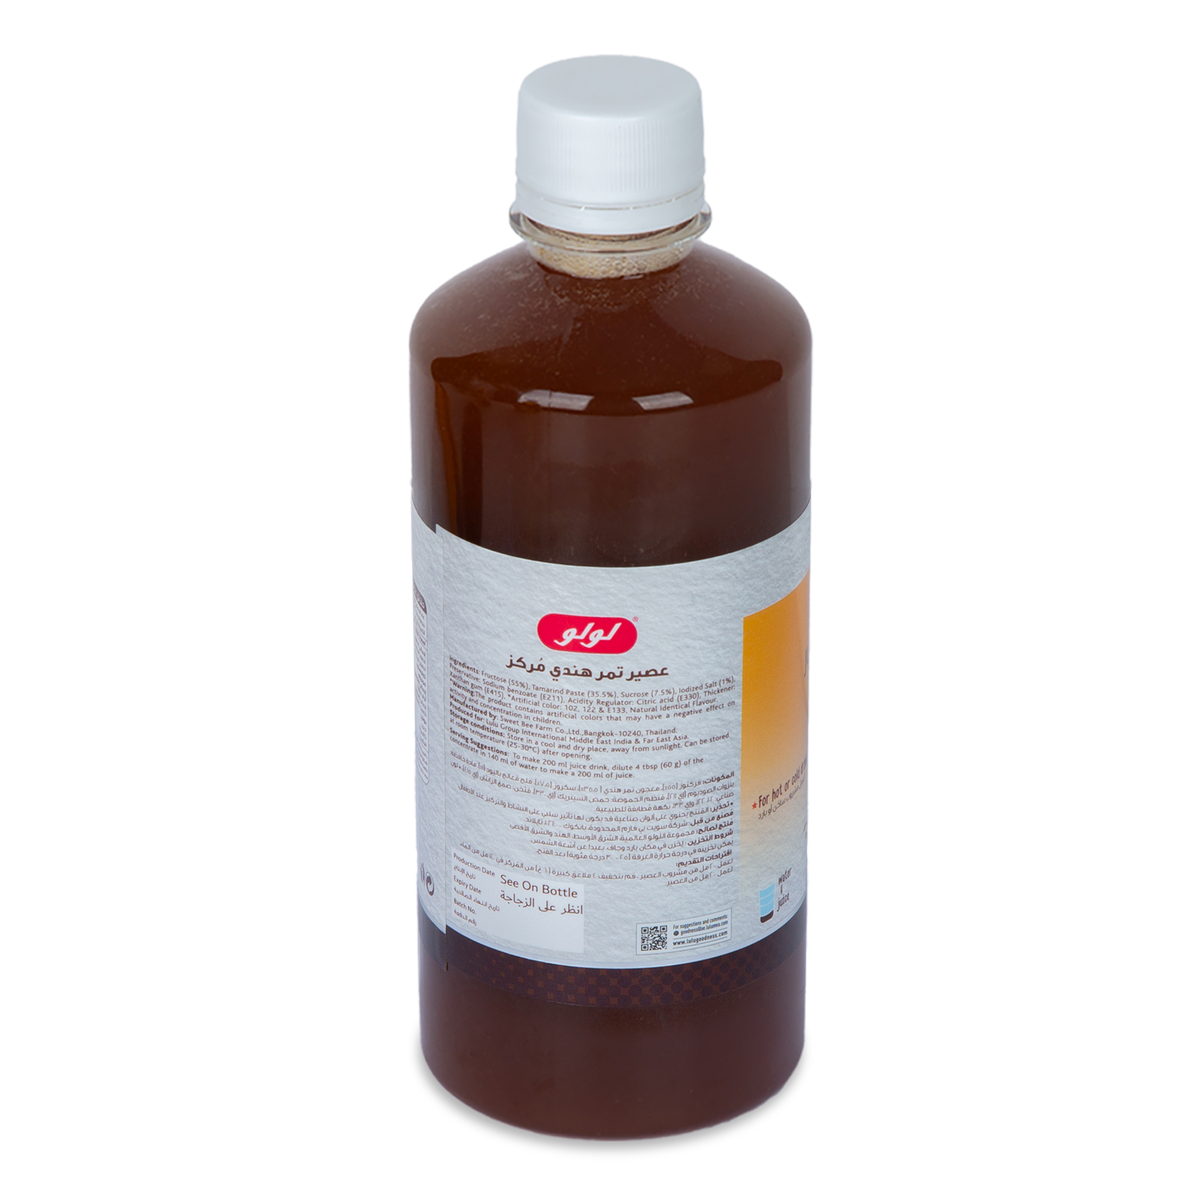 LuLu Tamarind Juice Concentrate, 600 g